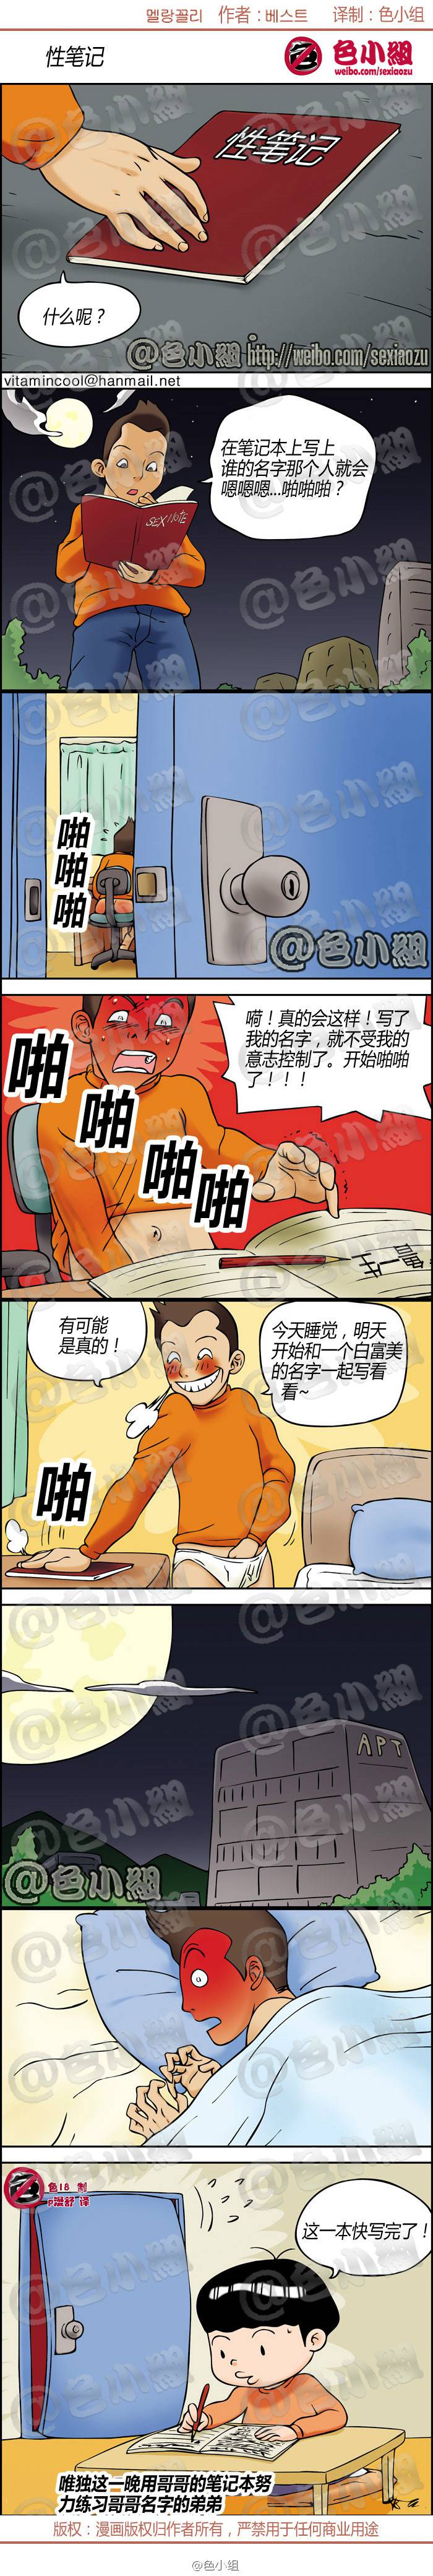 邪恶漫画爆笑囧图第006刊：拼性感有绝招